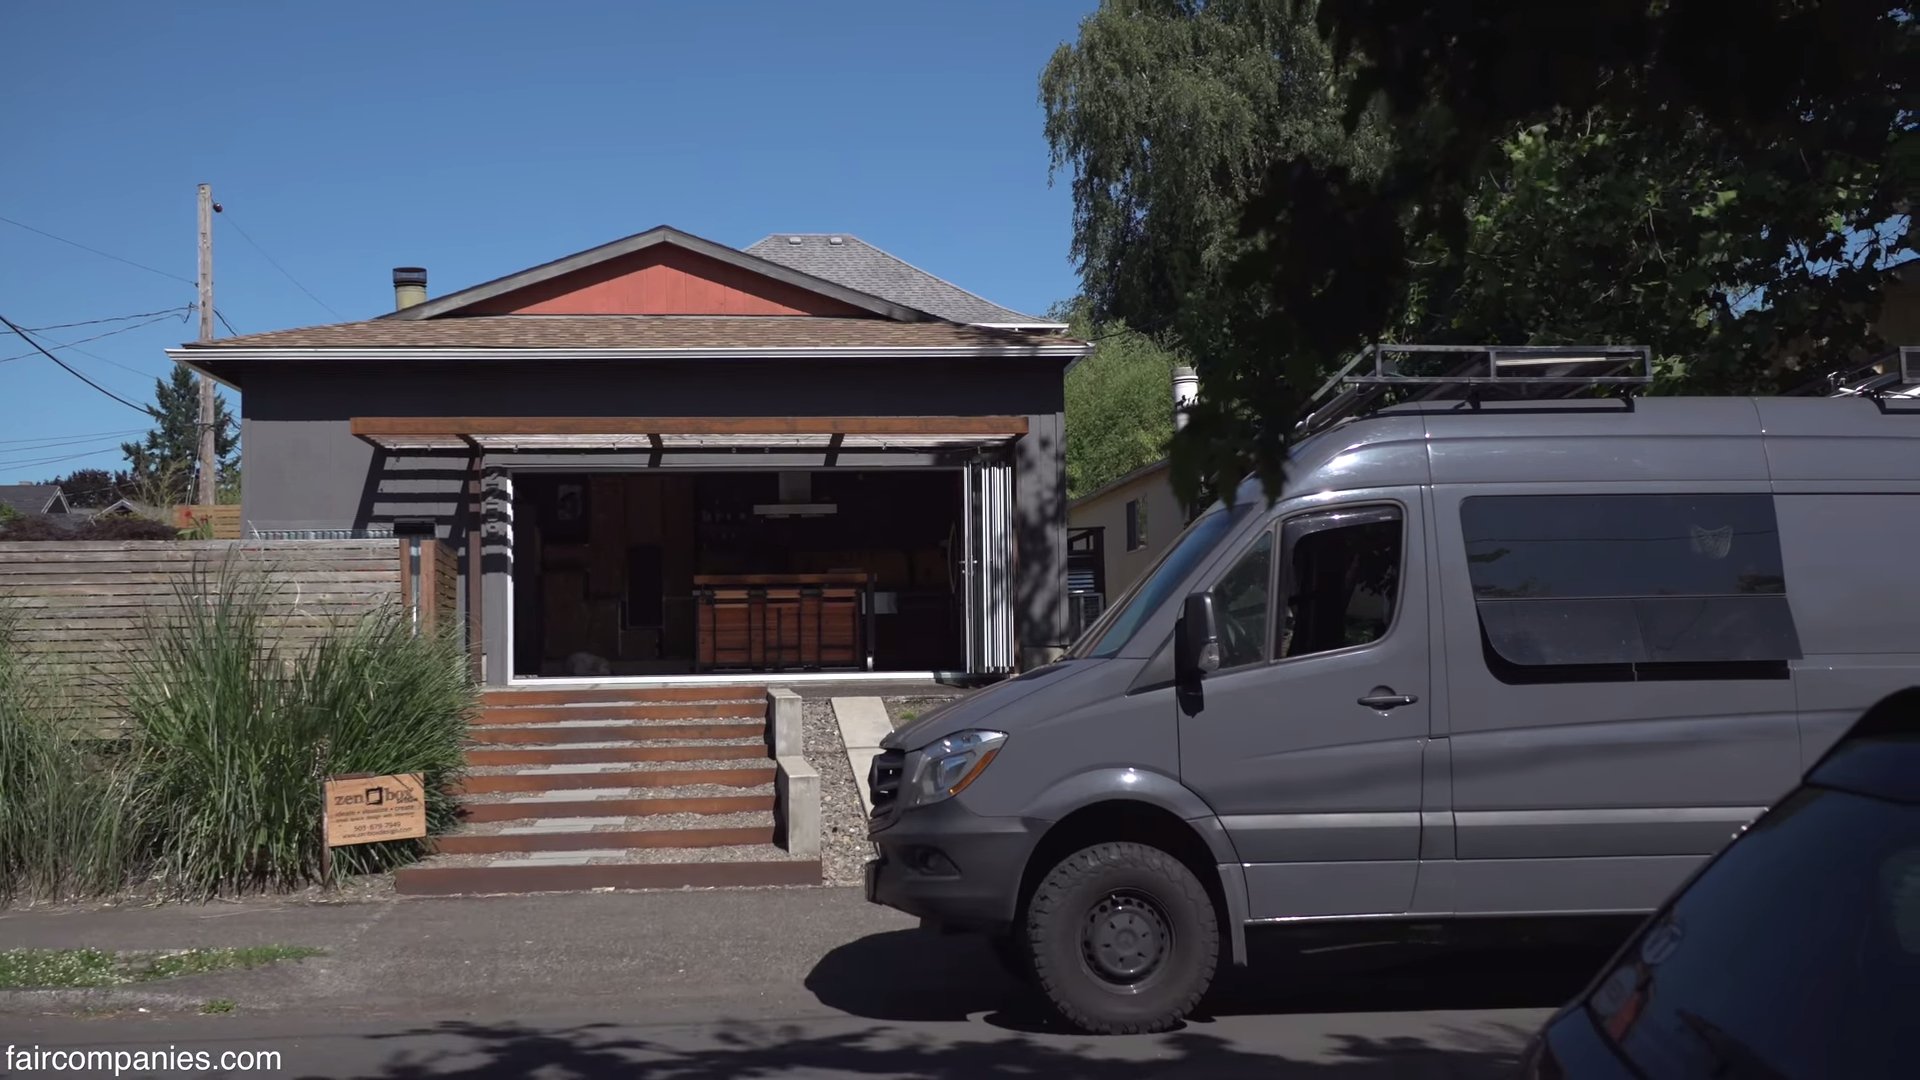 Couples Garage Tiny Home and Van Lifestyle via Faircompanies